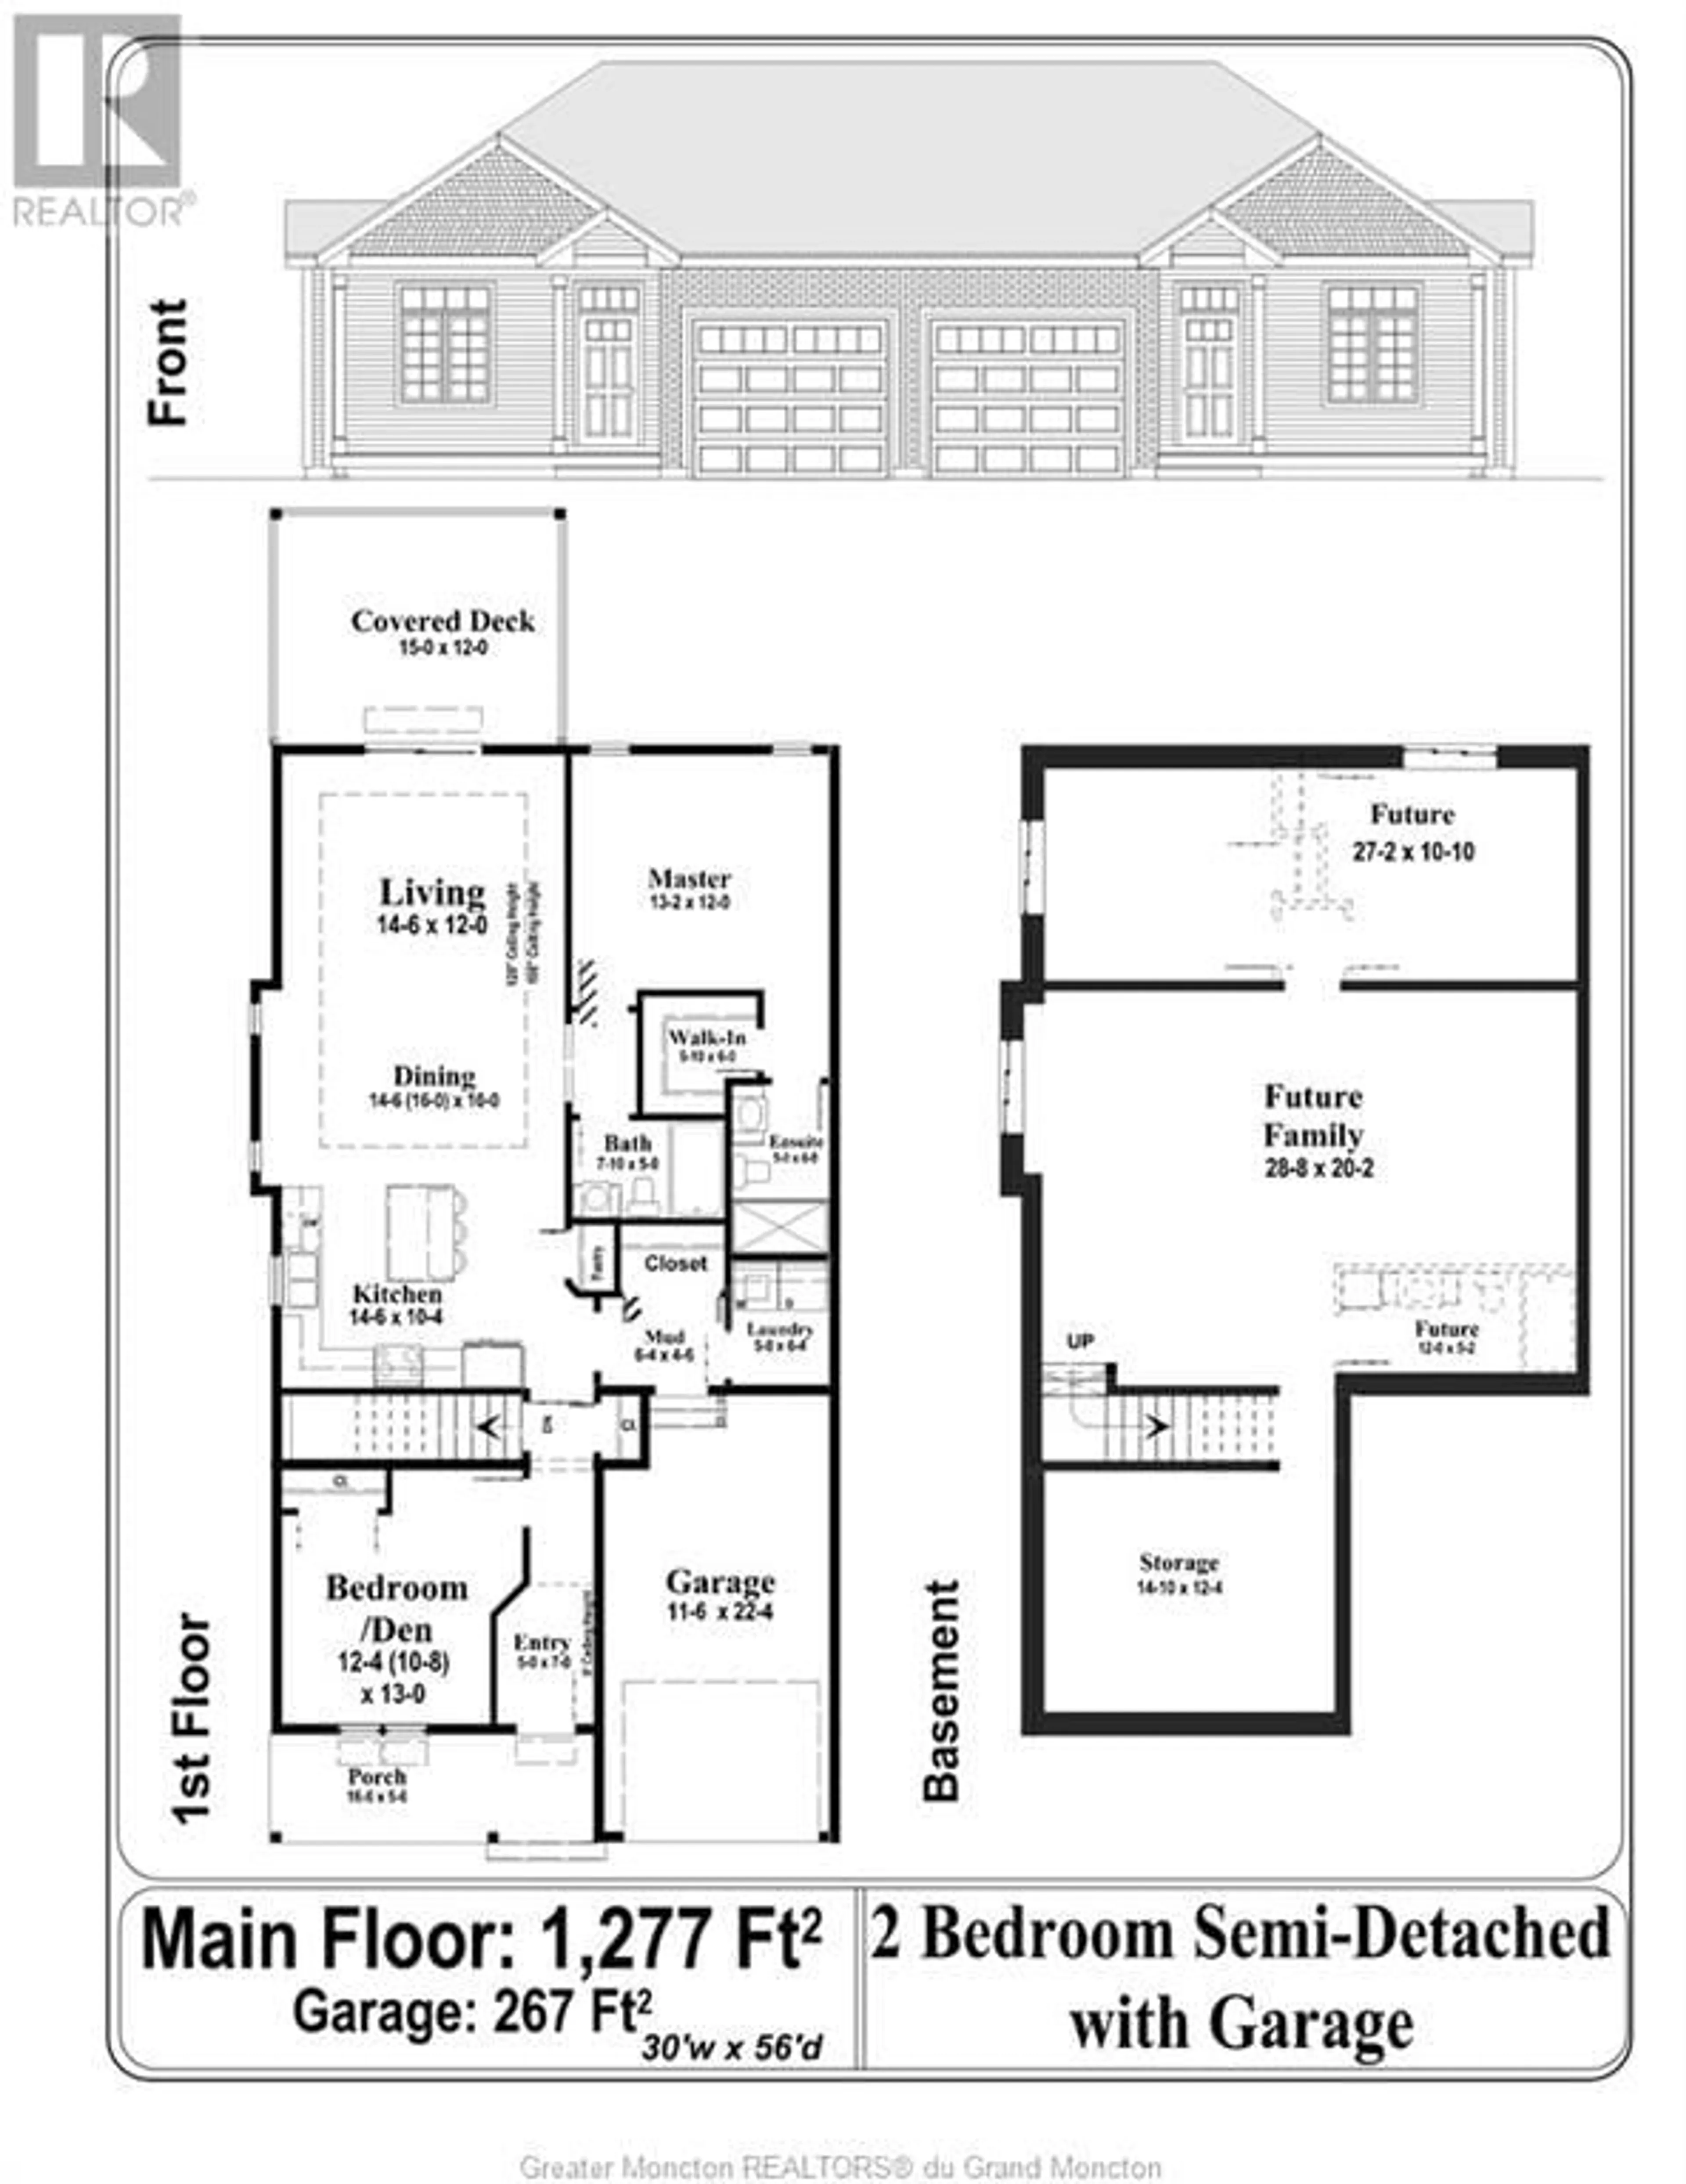 Floor plan for 548 Royal Oaks, Moncton New Brunswick E1H3S7